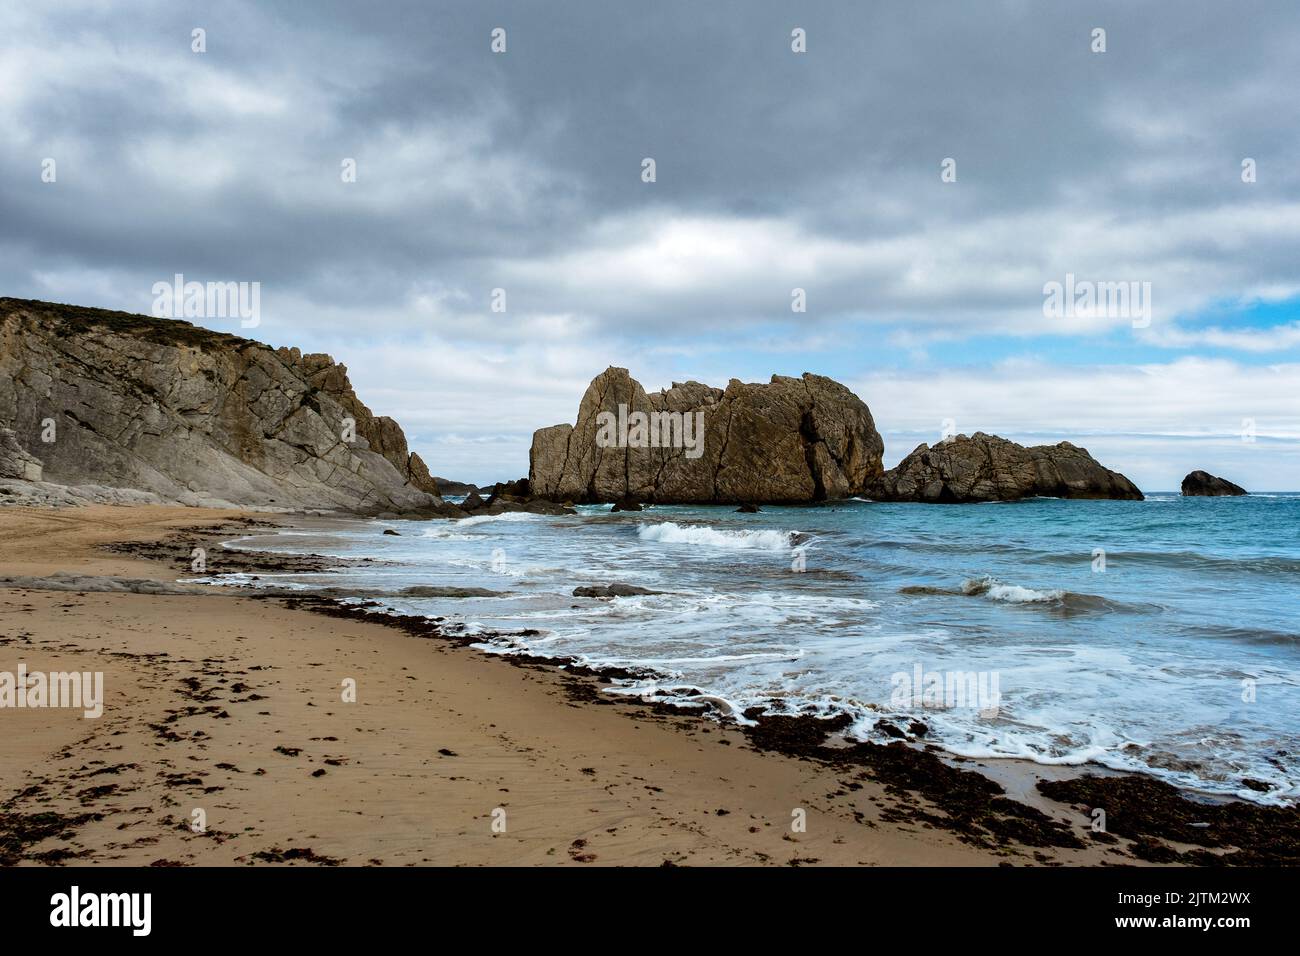 Sea stacks in the Arnia beach, Costa Quebrada, Broken Coast, Cantabrian sea, Cantabria, Spain Stock Photo